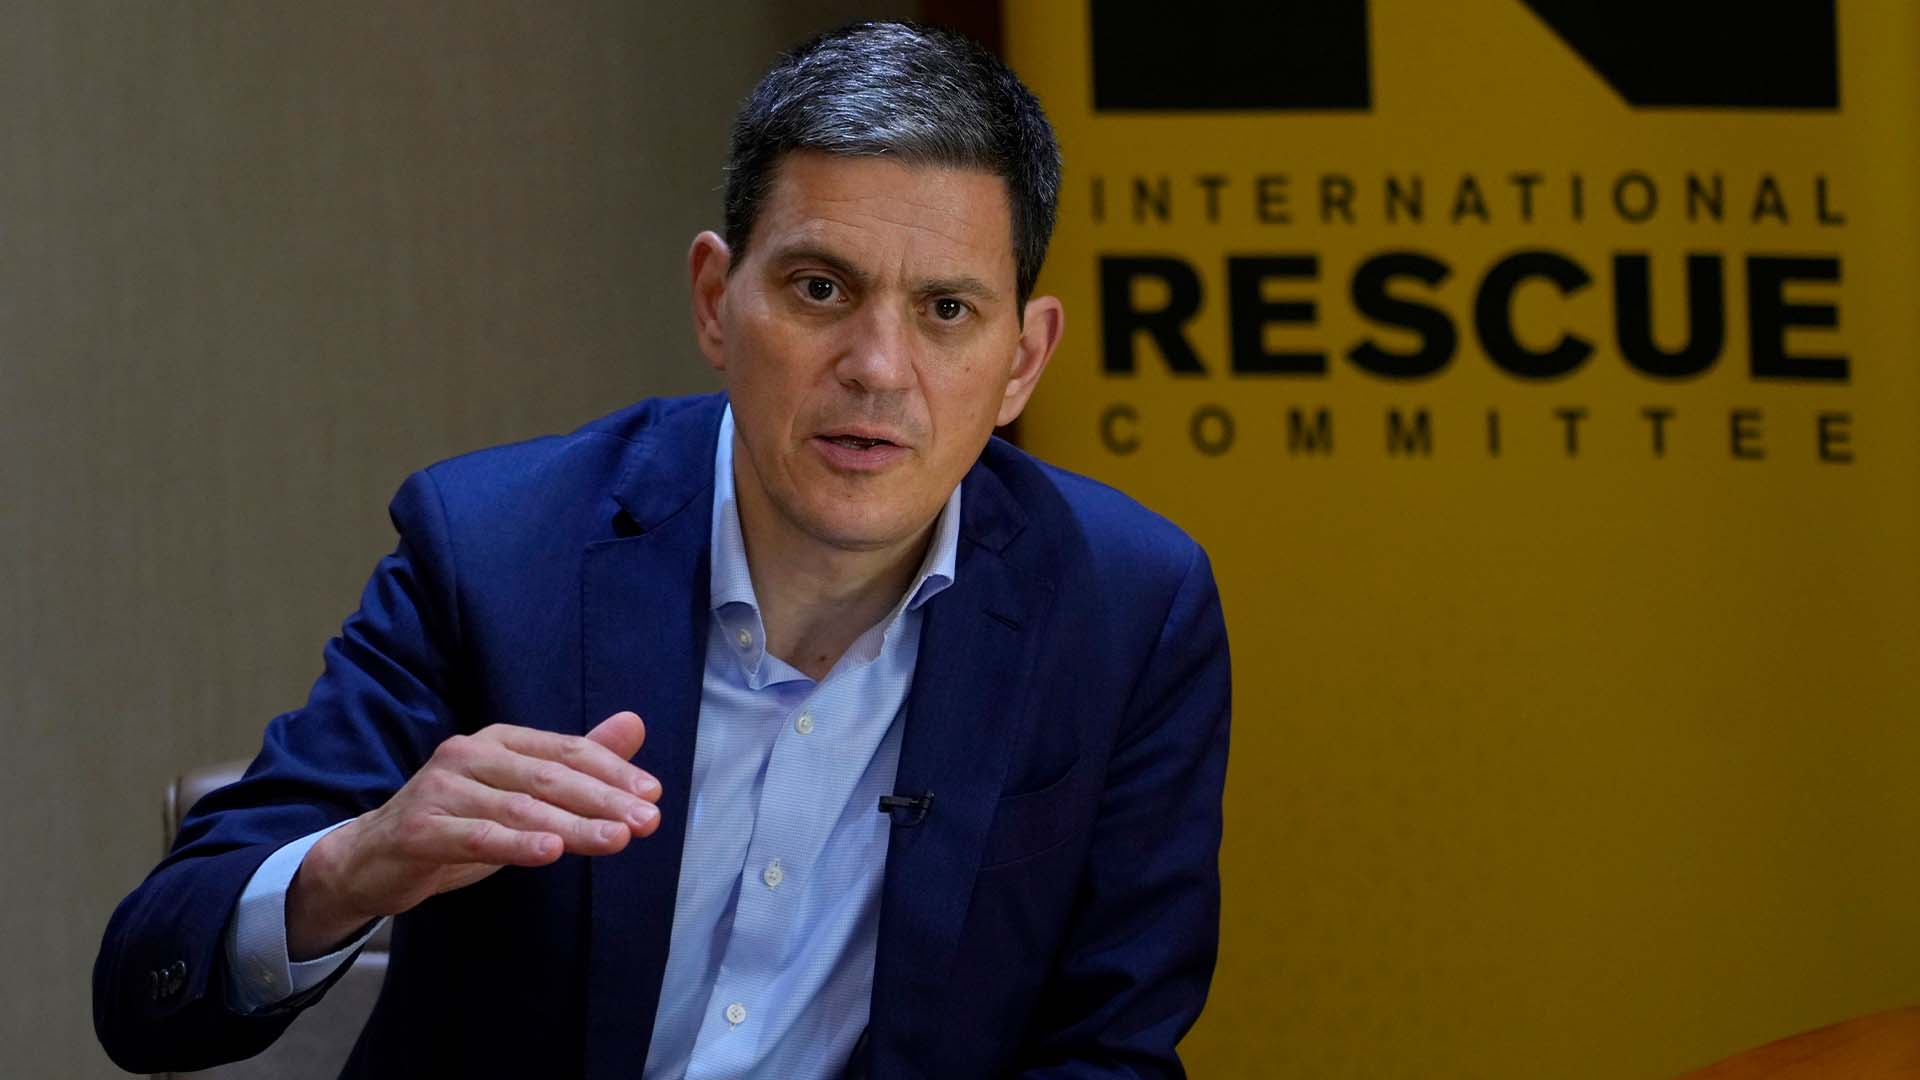 David Miliband on global crises: Gaza, DRC, Sudan, Ukraine | Talk to Al Jazeera